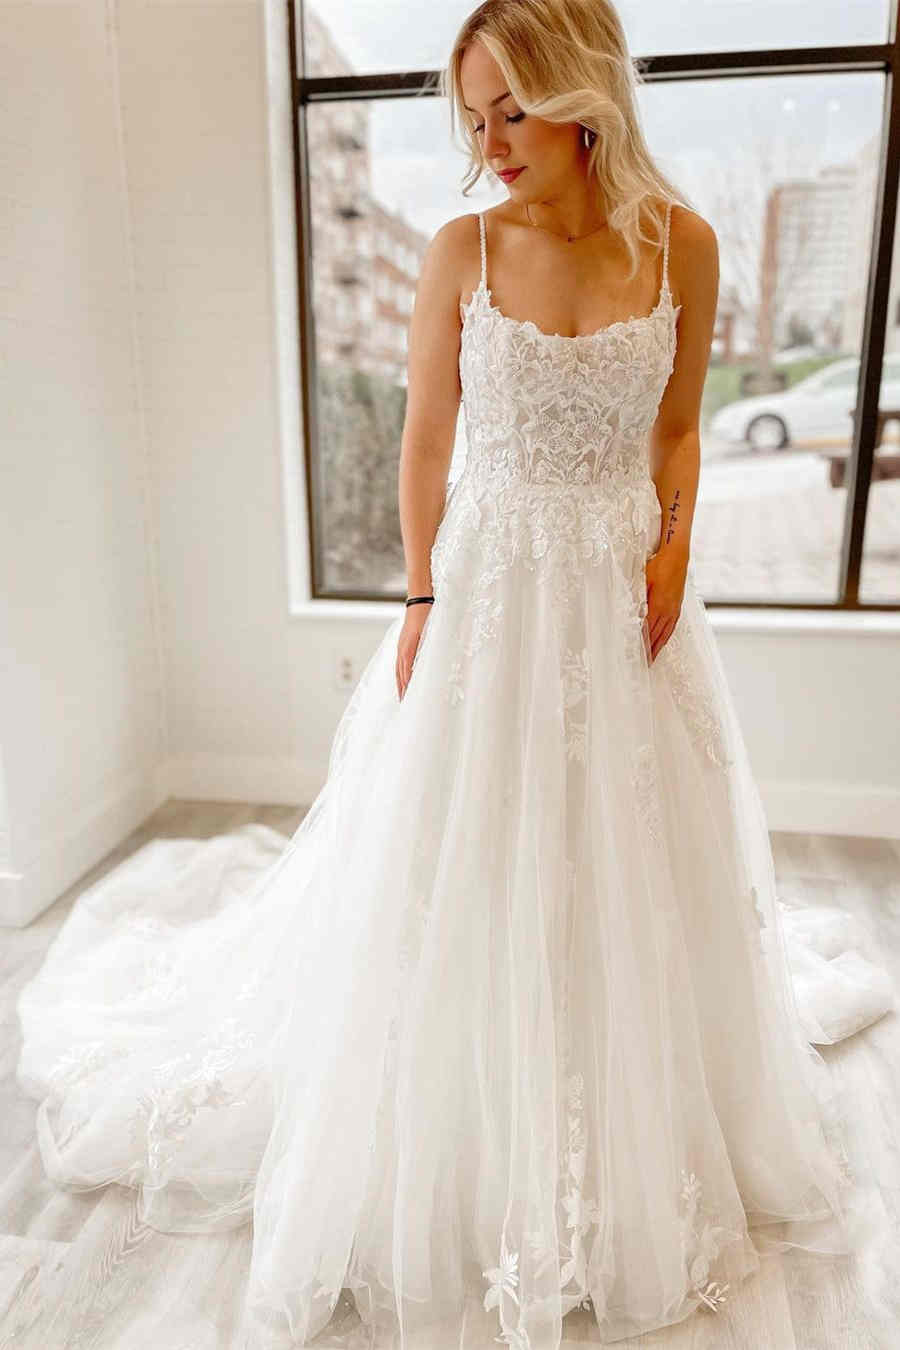 Sheer Lace Bodice White Long Wedding Dress